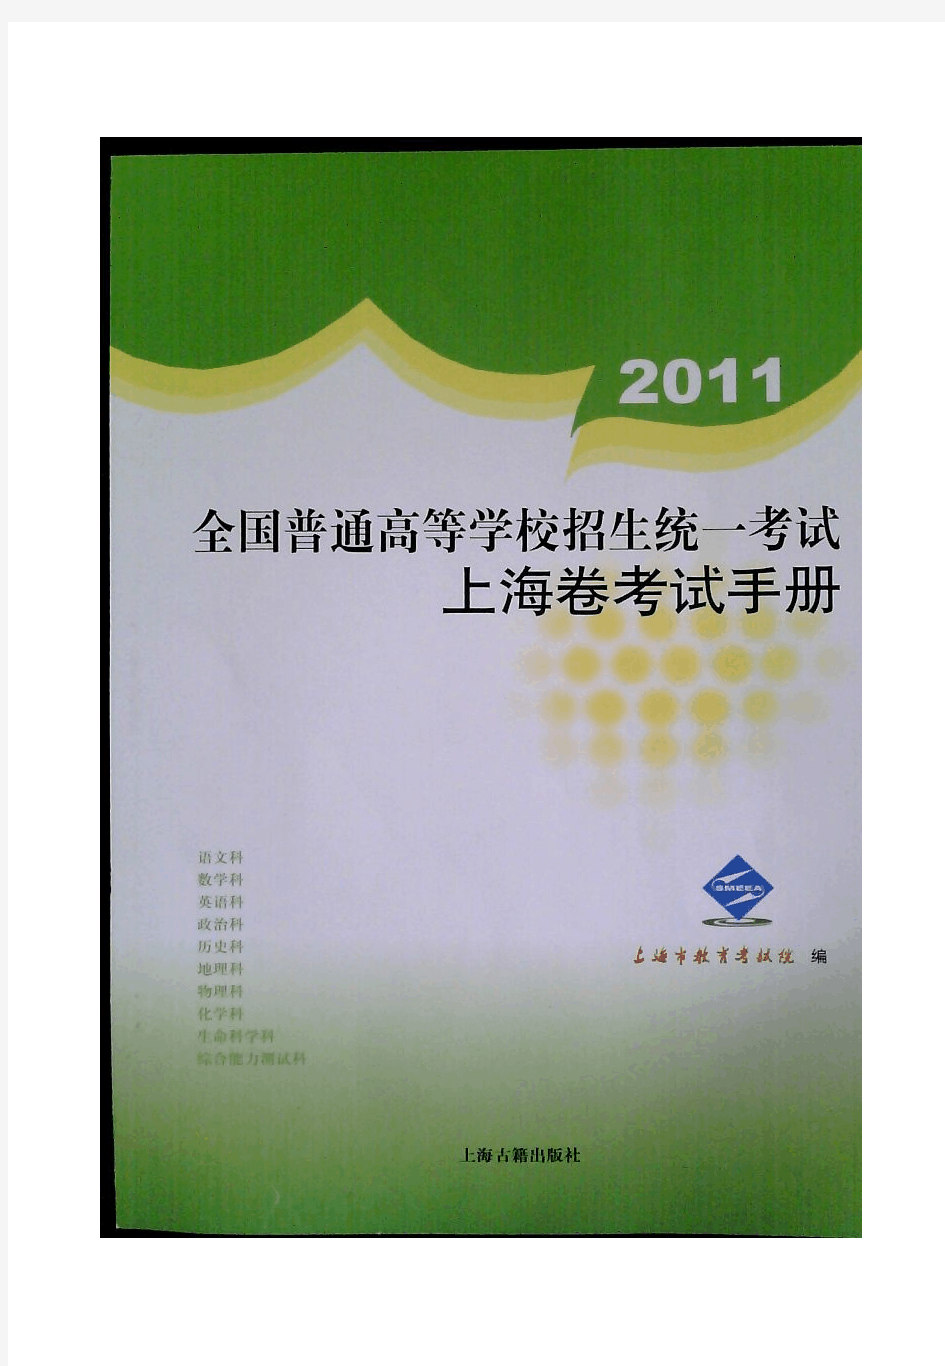 2011年上海高考考纲(完整pdf版)综合